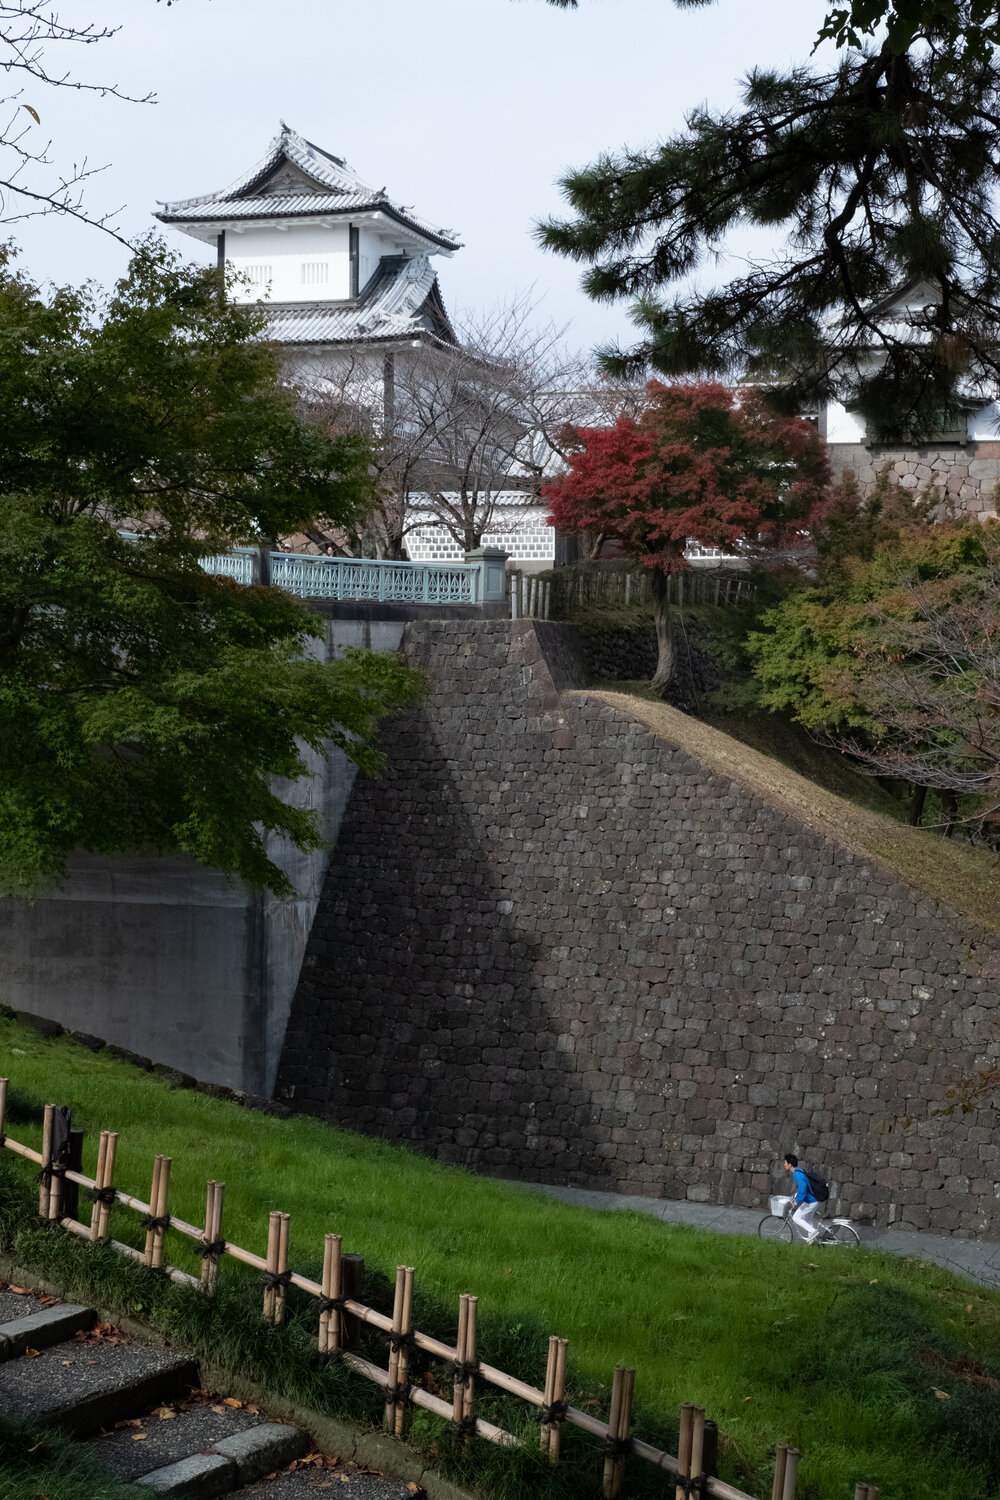 Kanazawa Castle